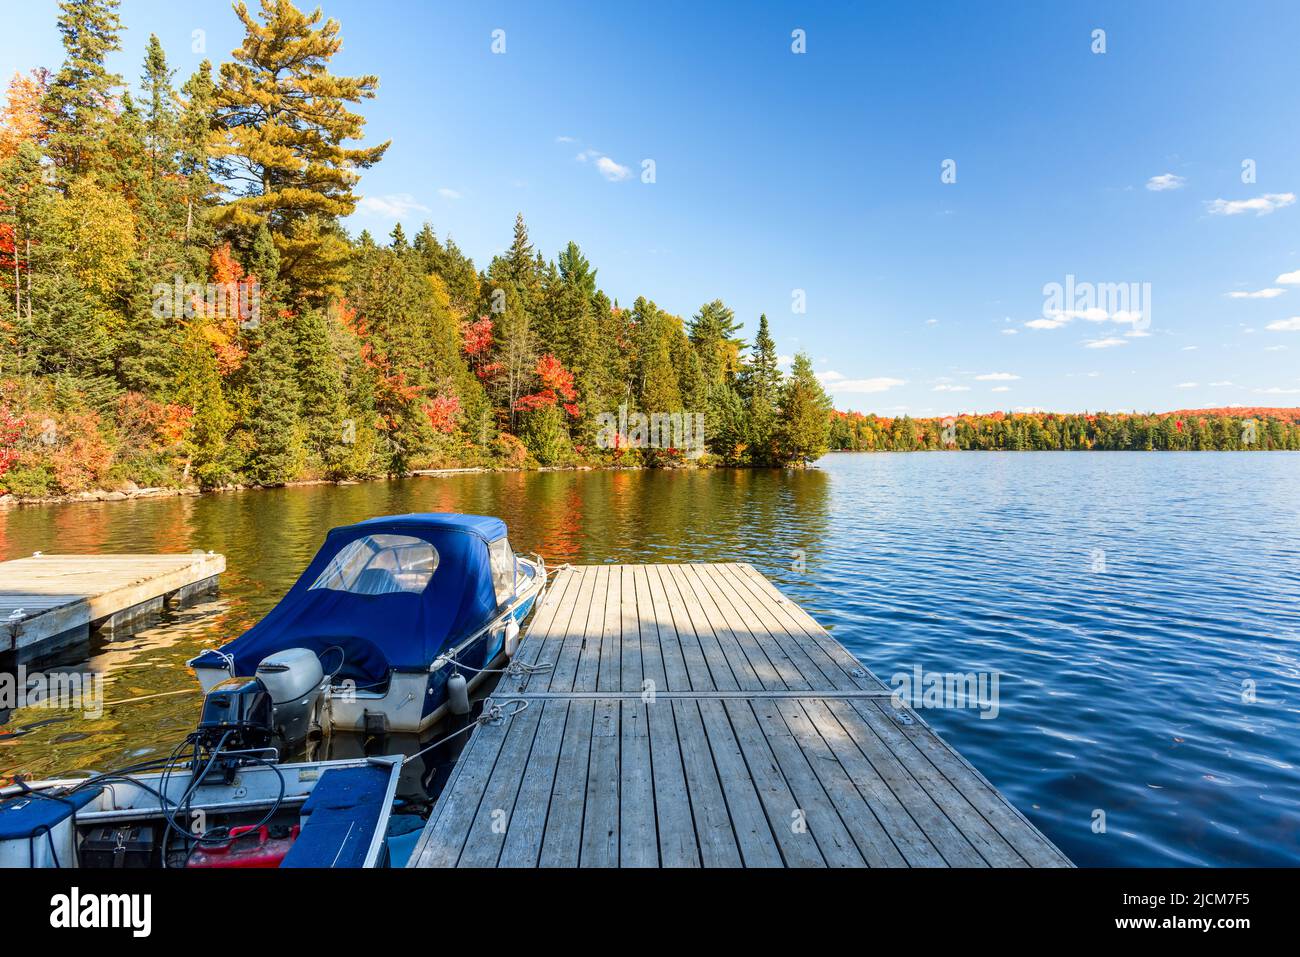 Lanchas atadas a un embarcadero de madera en un lago con costas boscosas en el pico del follaje otoñal en un soleado día de otoño Foto de stock